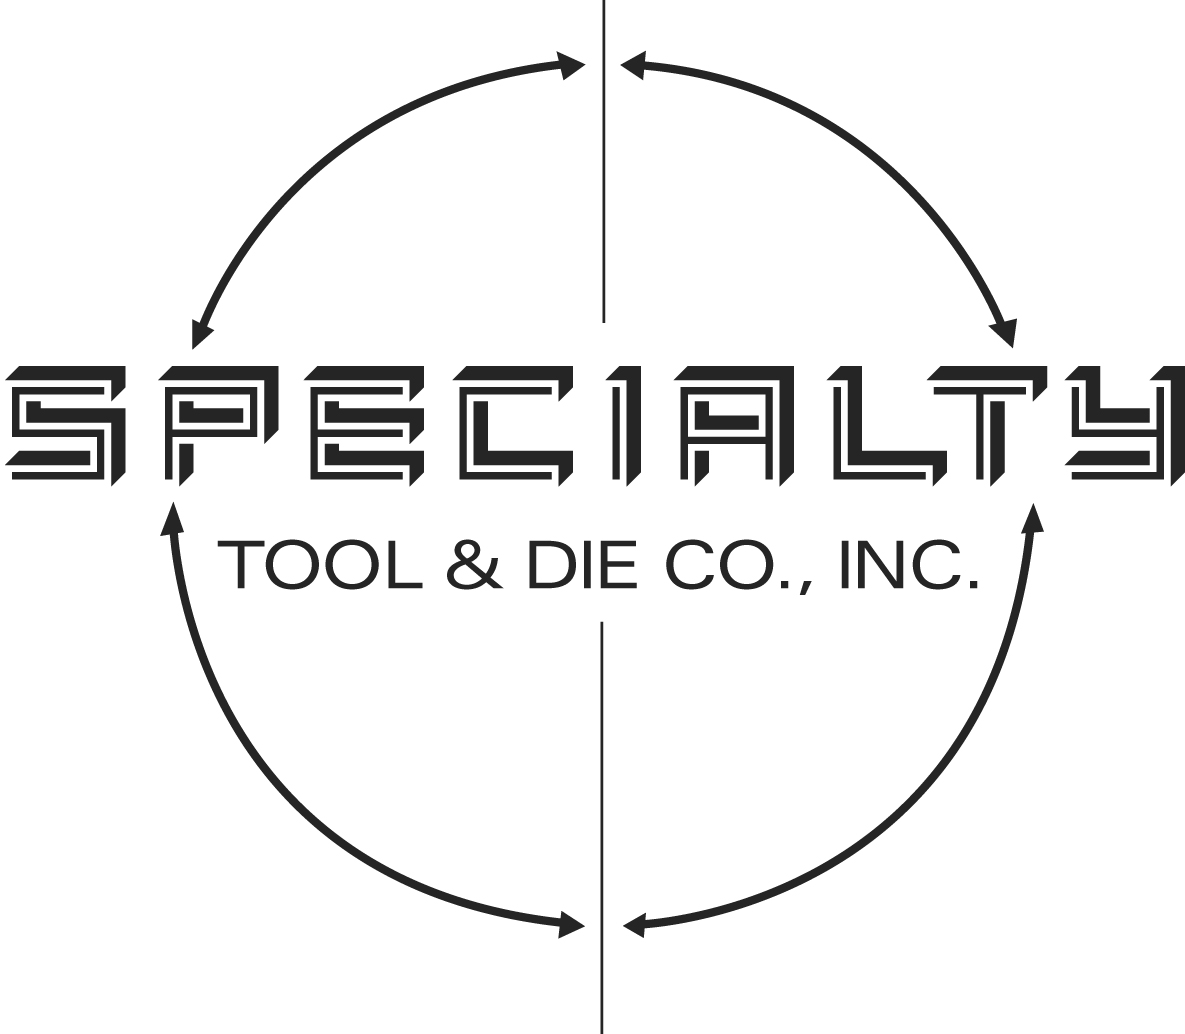 9. Specialty Tool & Die